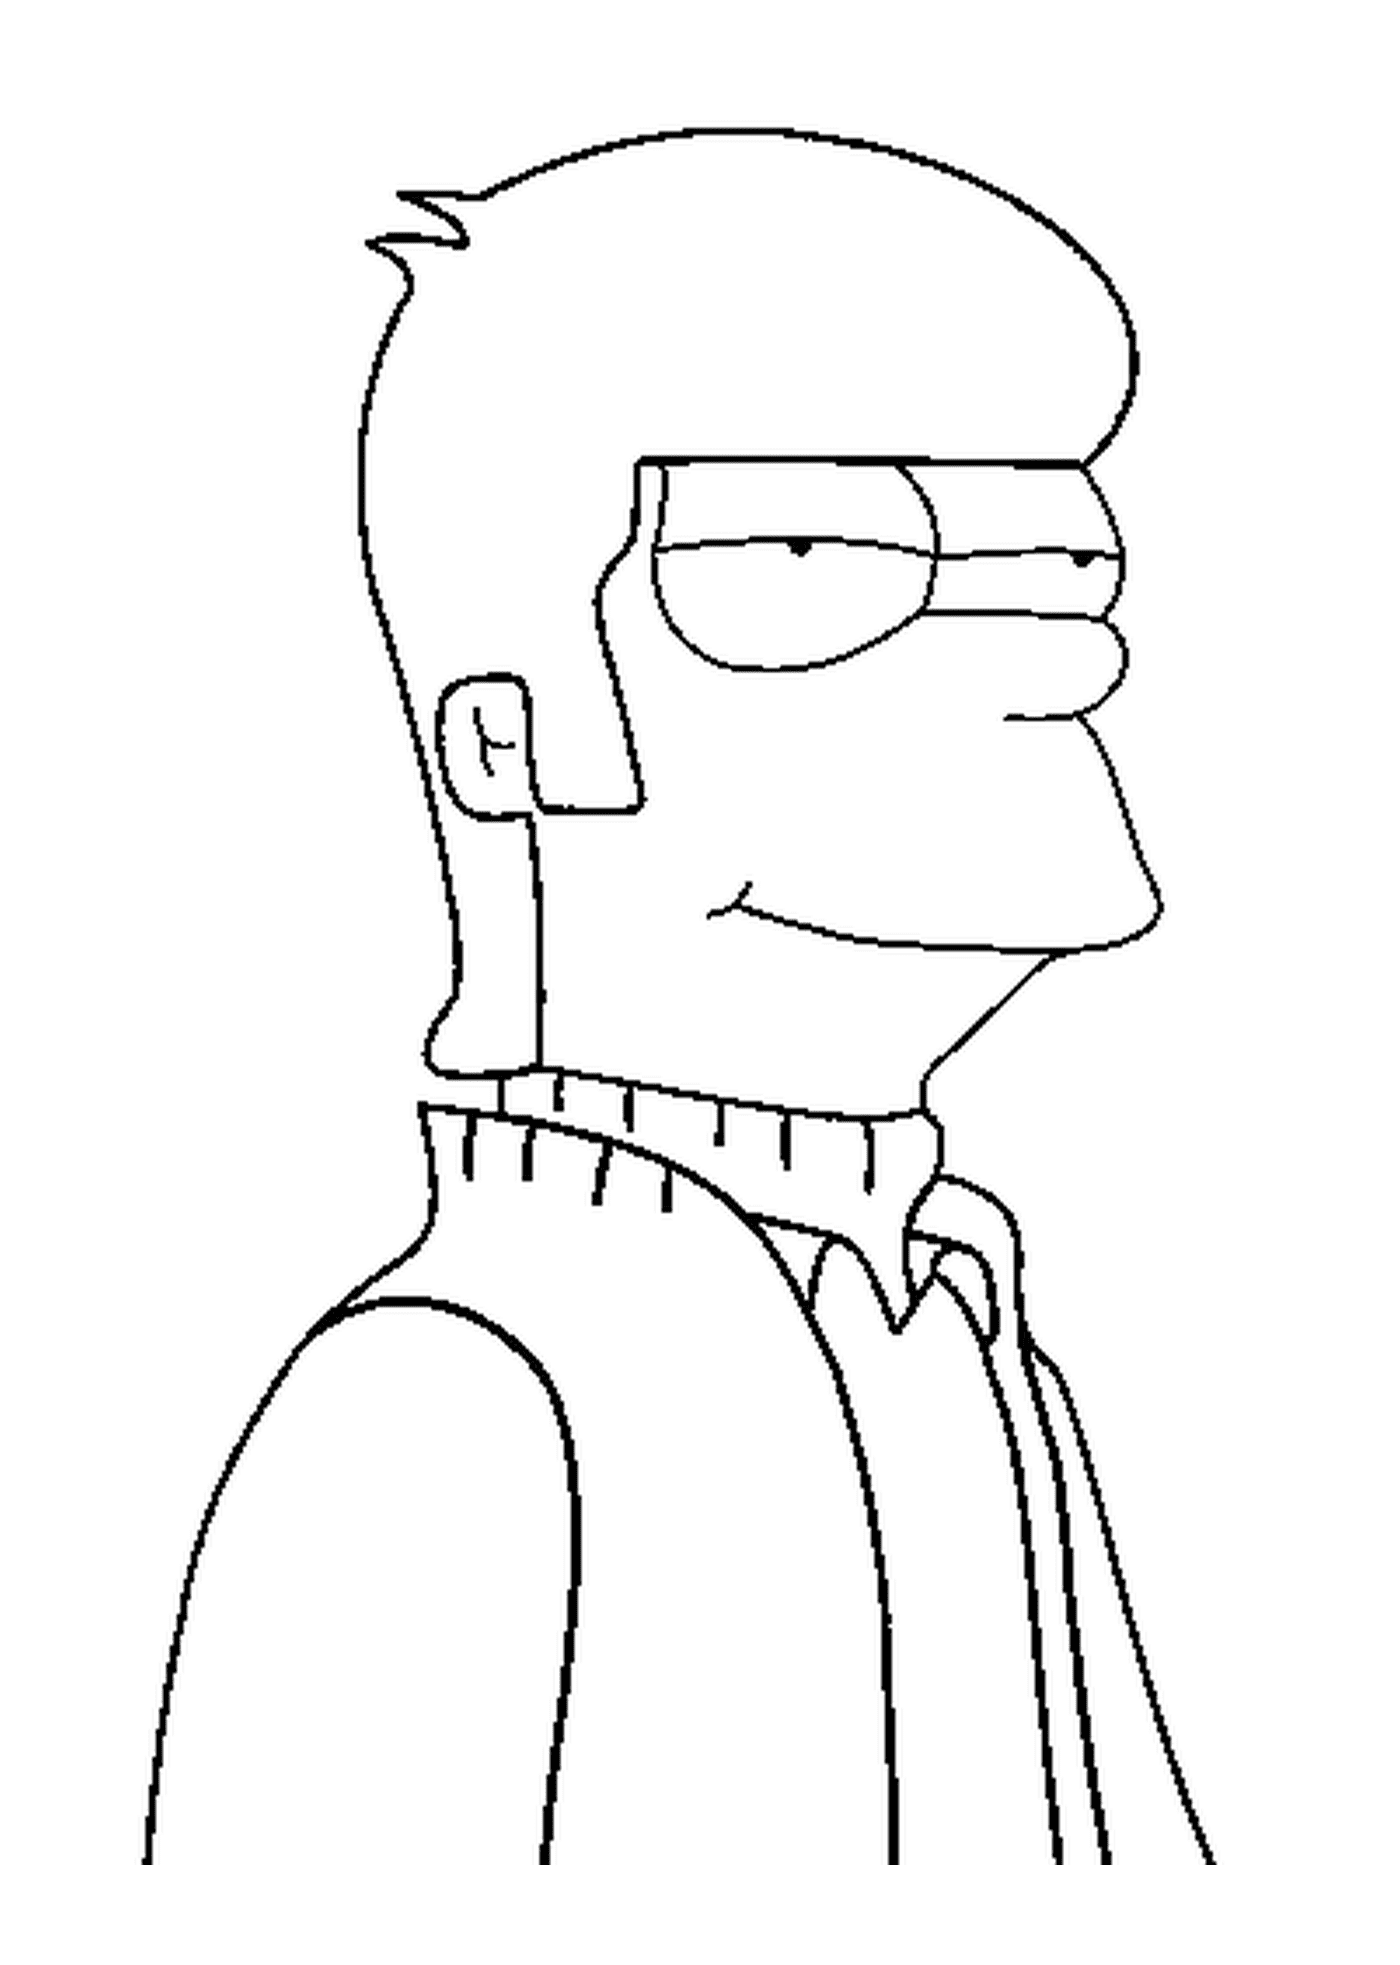  Homer Simpson, jung und spitzbübisch 